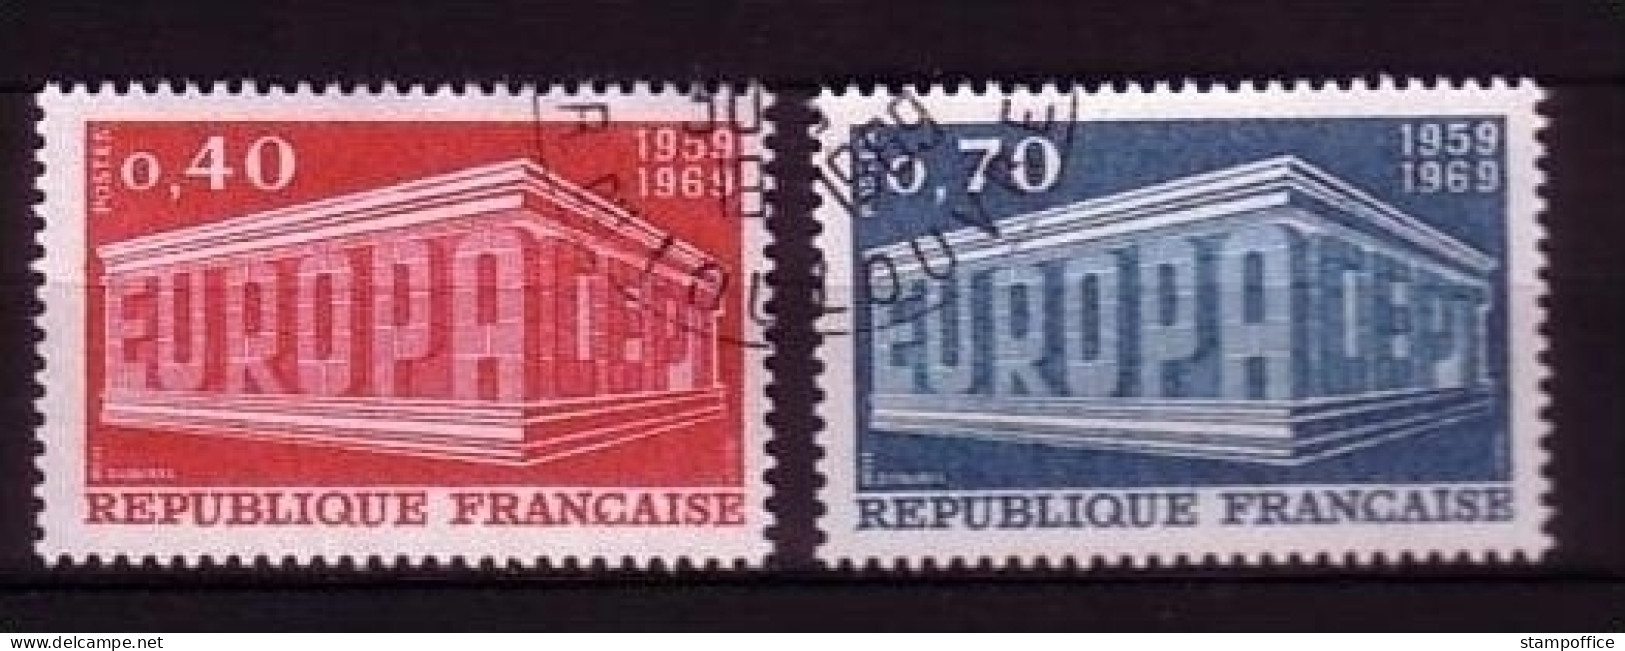 FRANKREICH MI-NR. 1665-1666 O EUROPA 1969 - EUROPA CEPT - 1969